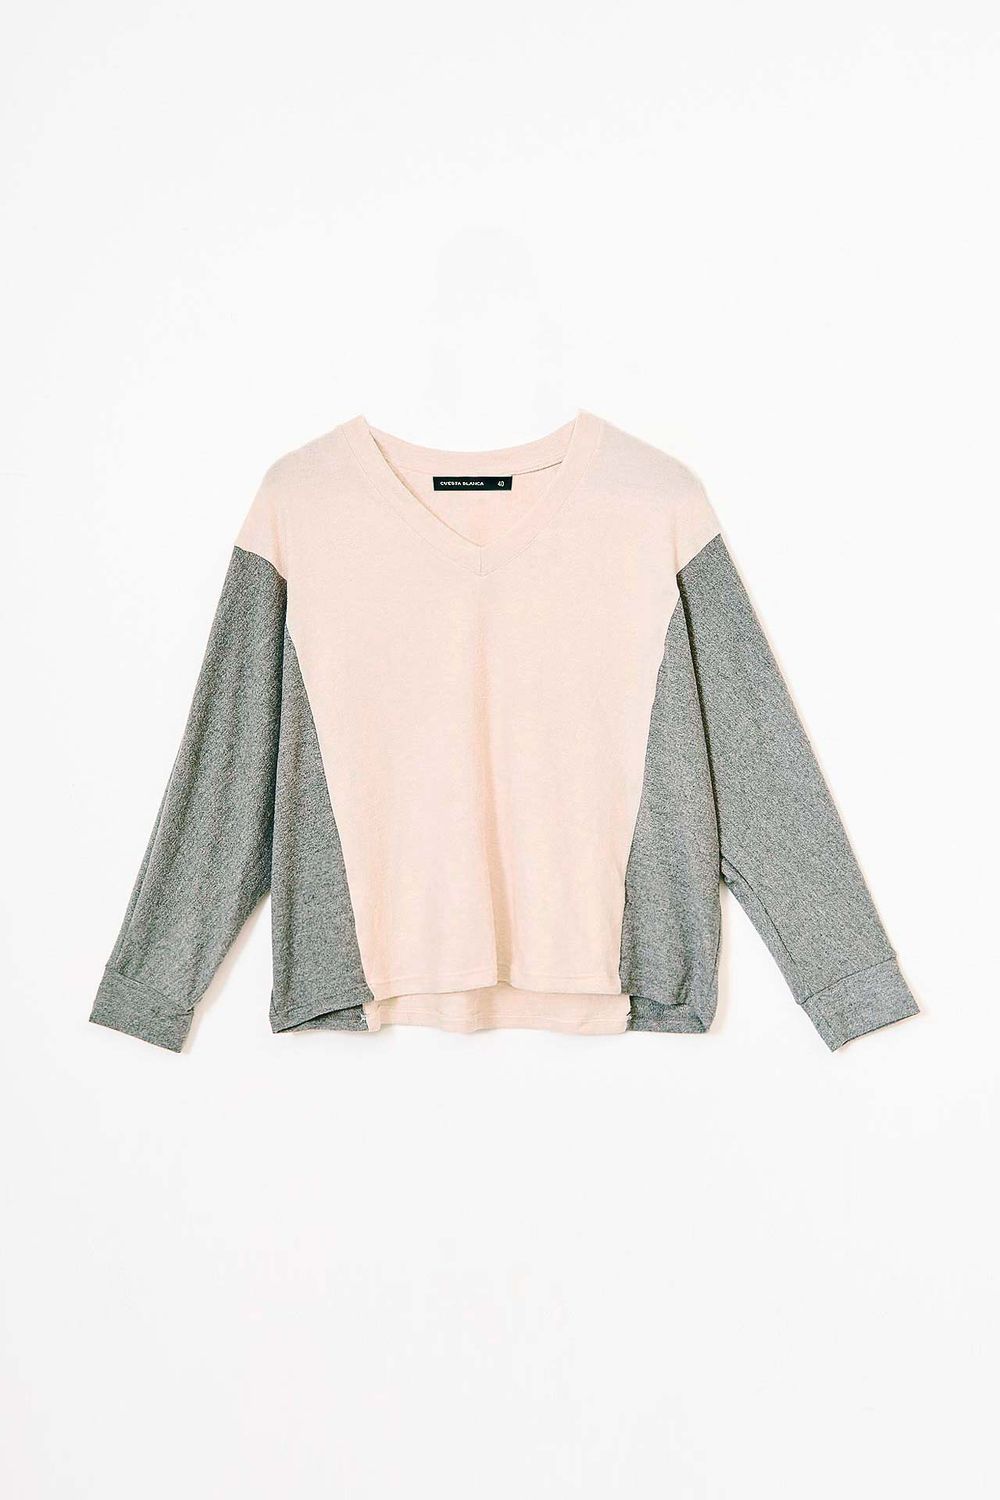 sweater-baibit-crudo-40